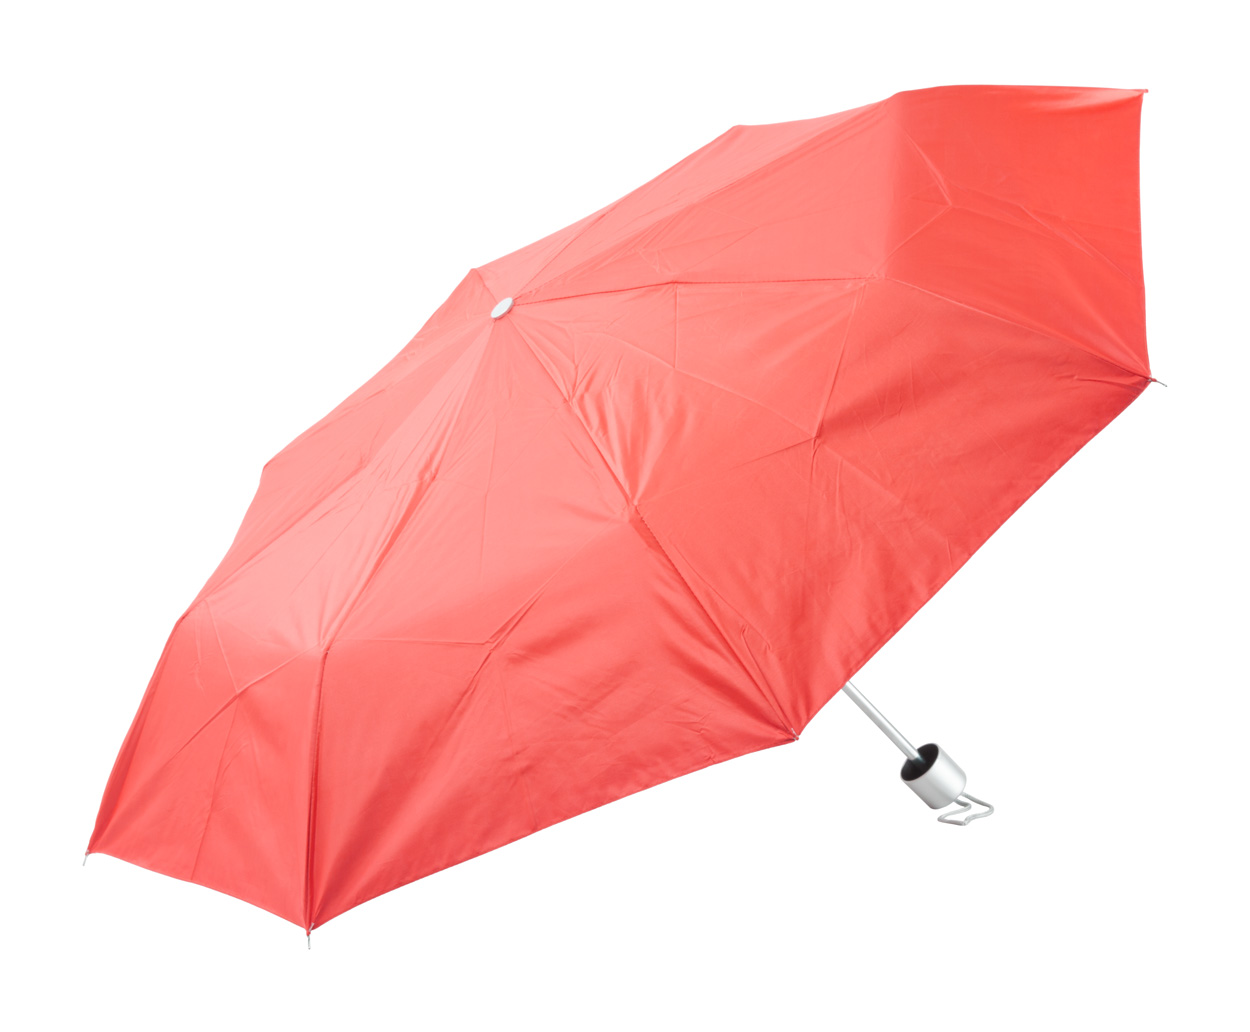 Susan deštník červená